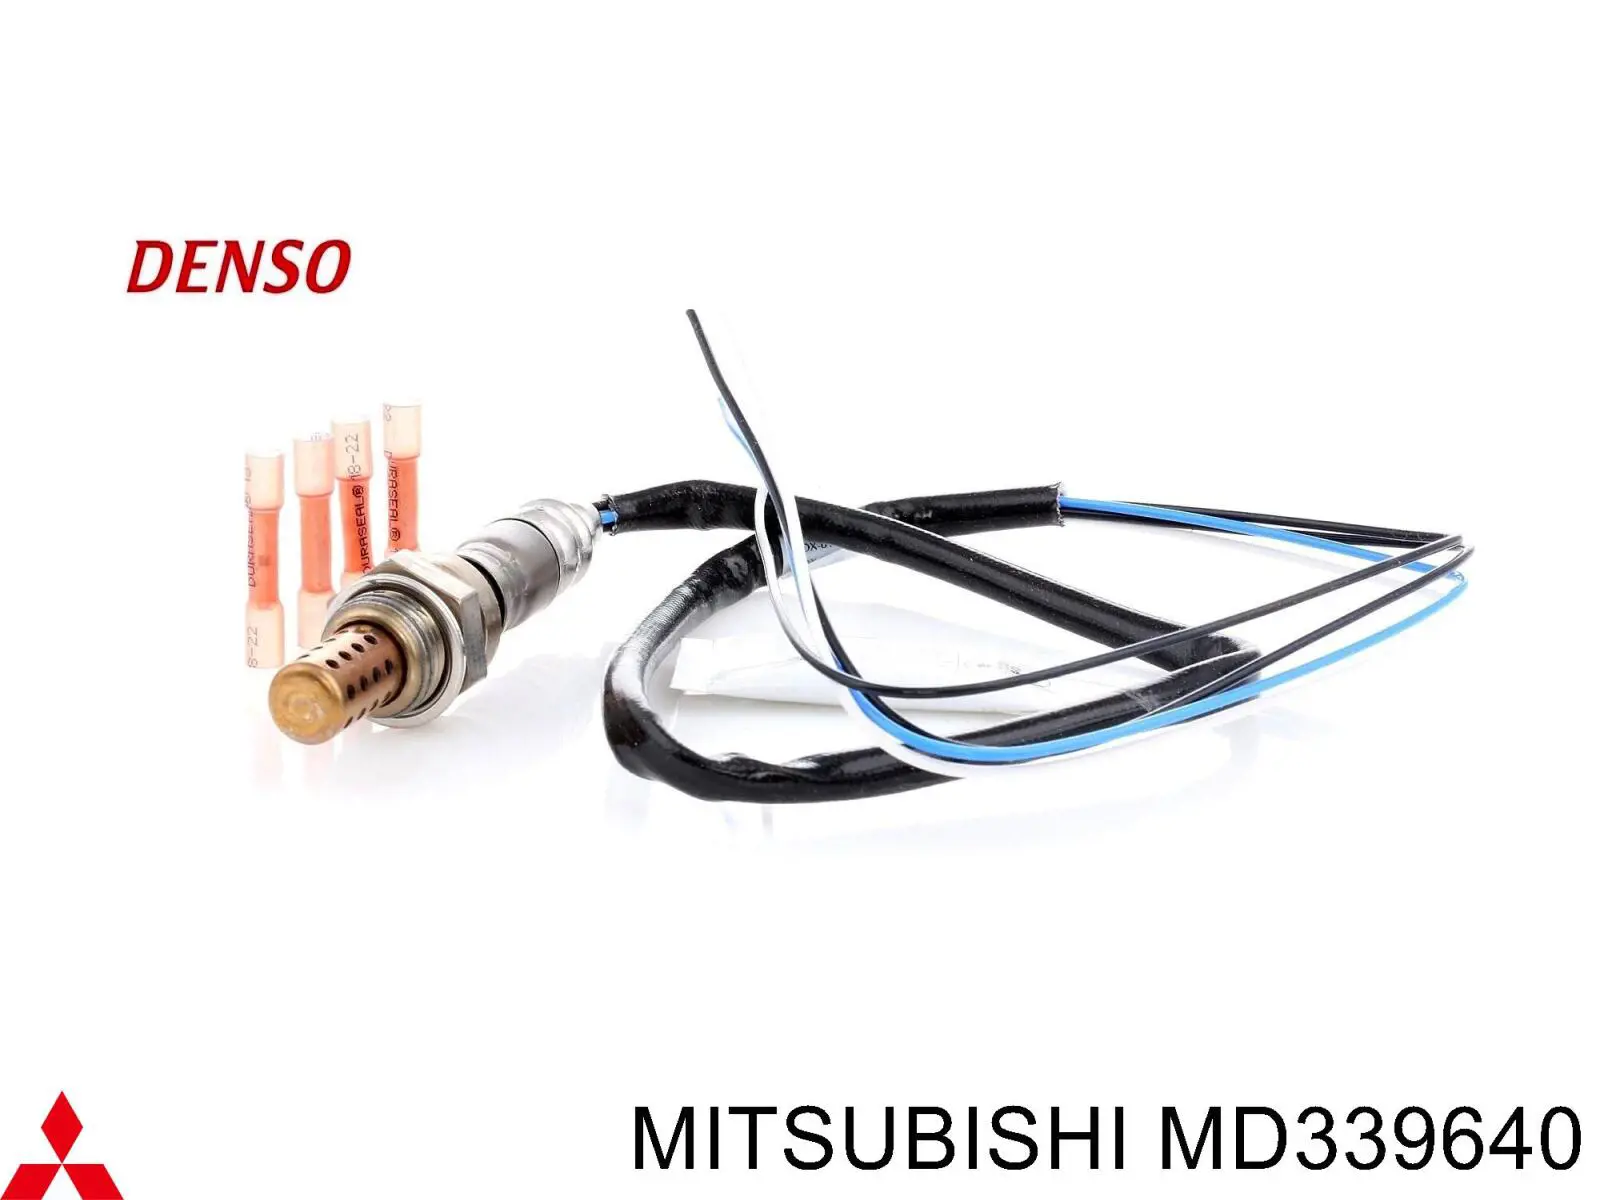 MD339640 Mitsubishi sonda lambda sensor de oxigeno post catalizador